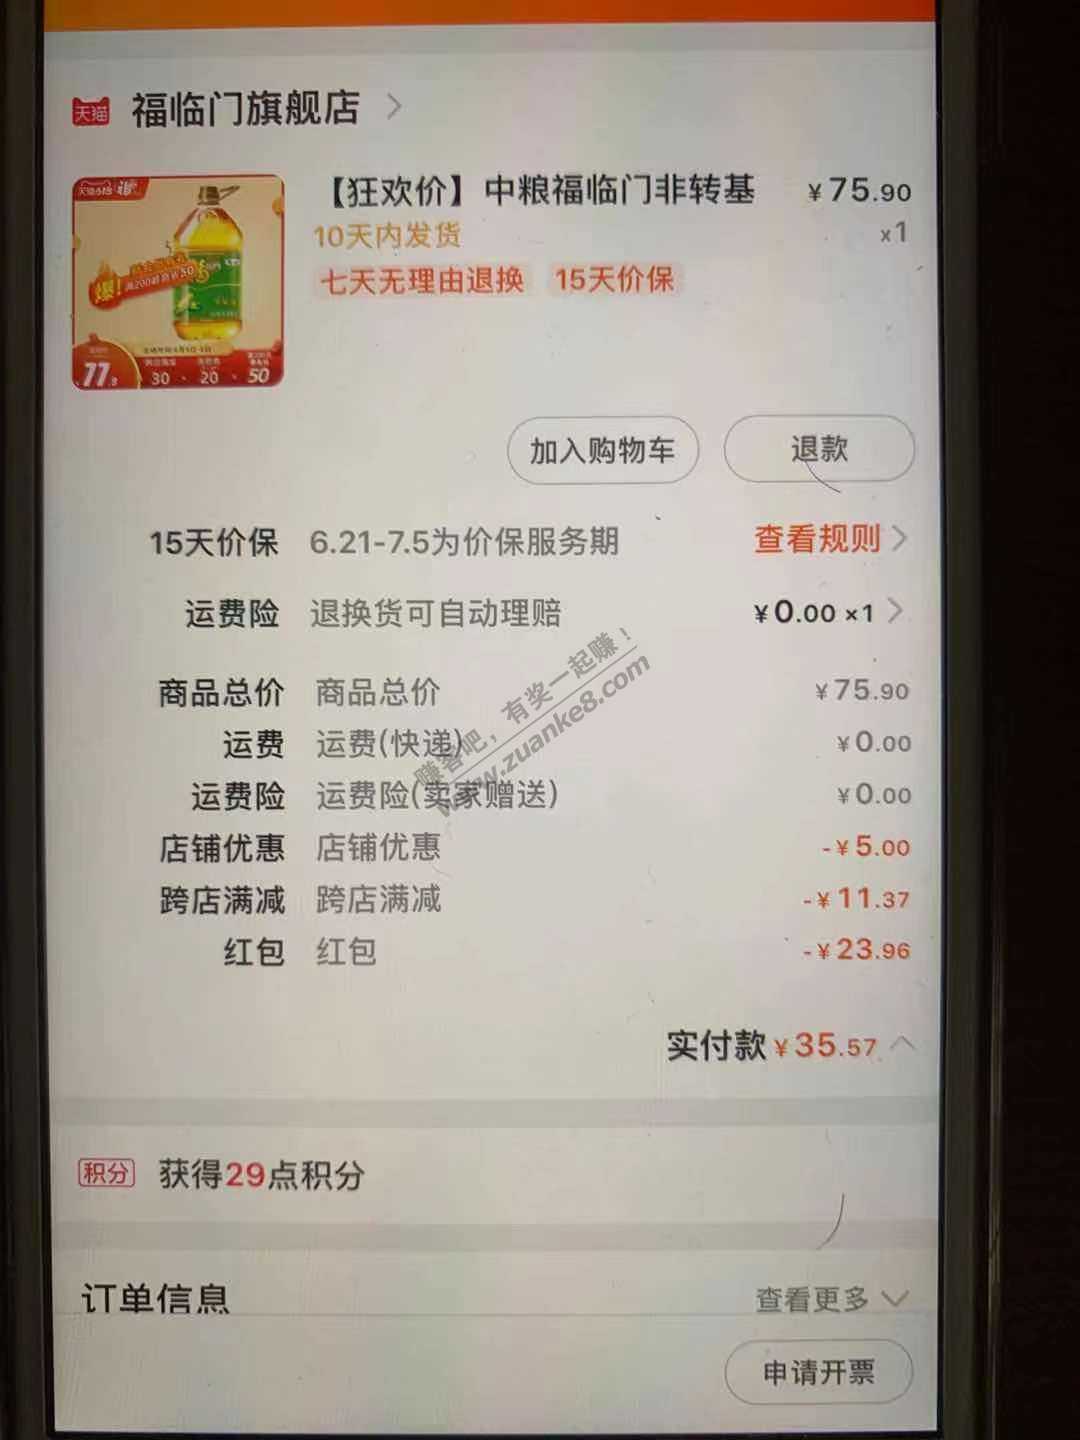 菜鸟红包玉米油好价-惠小助(52huixz.com)